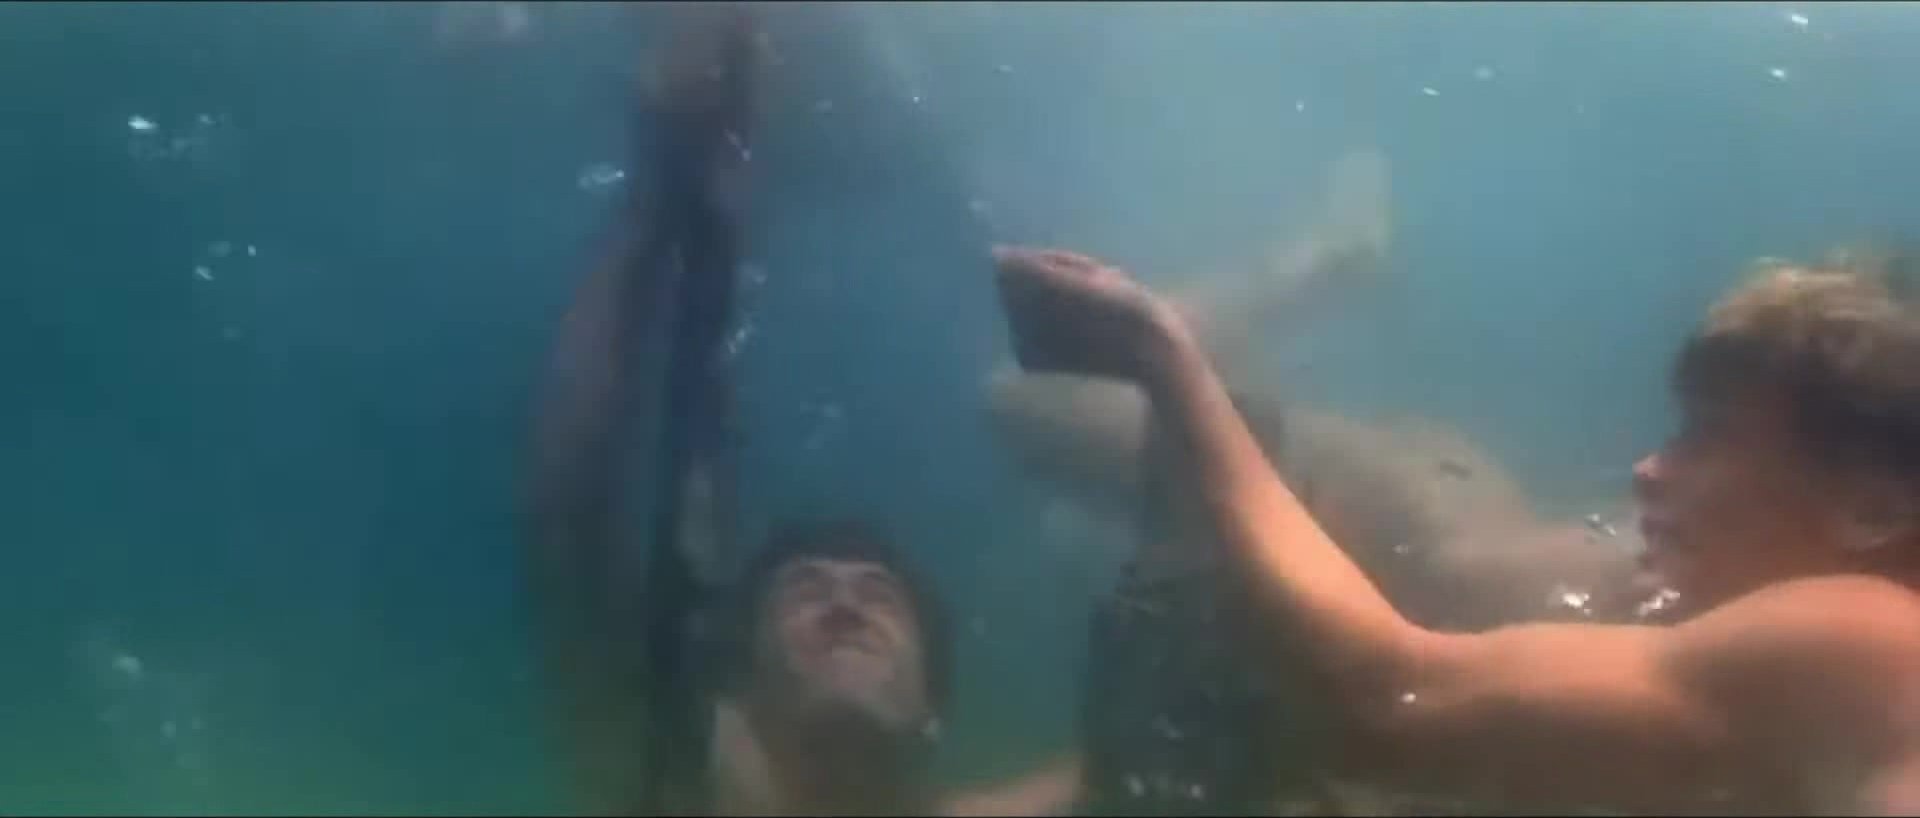 Guys swimming nude underwater - ThisVid.com